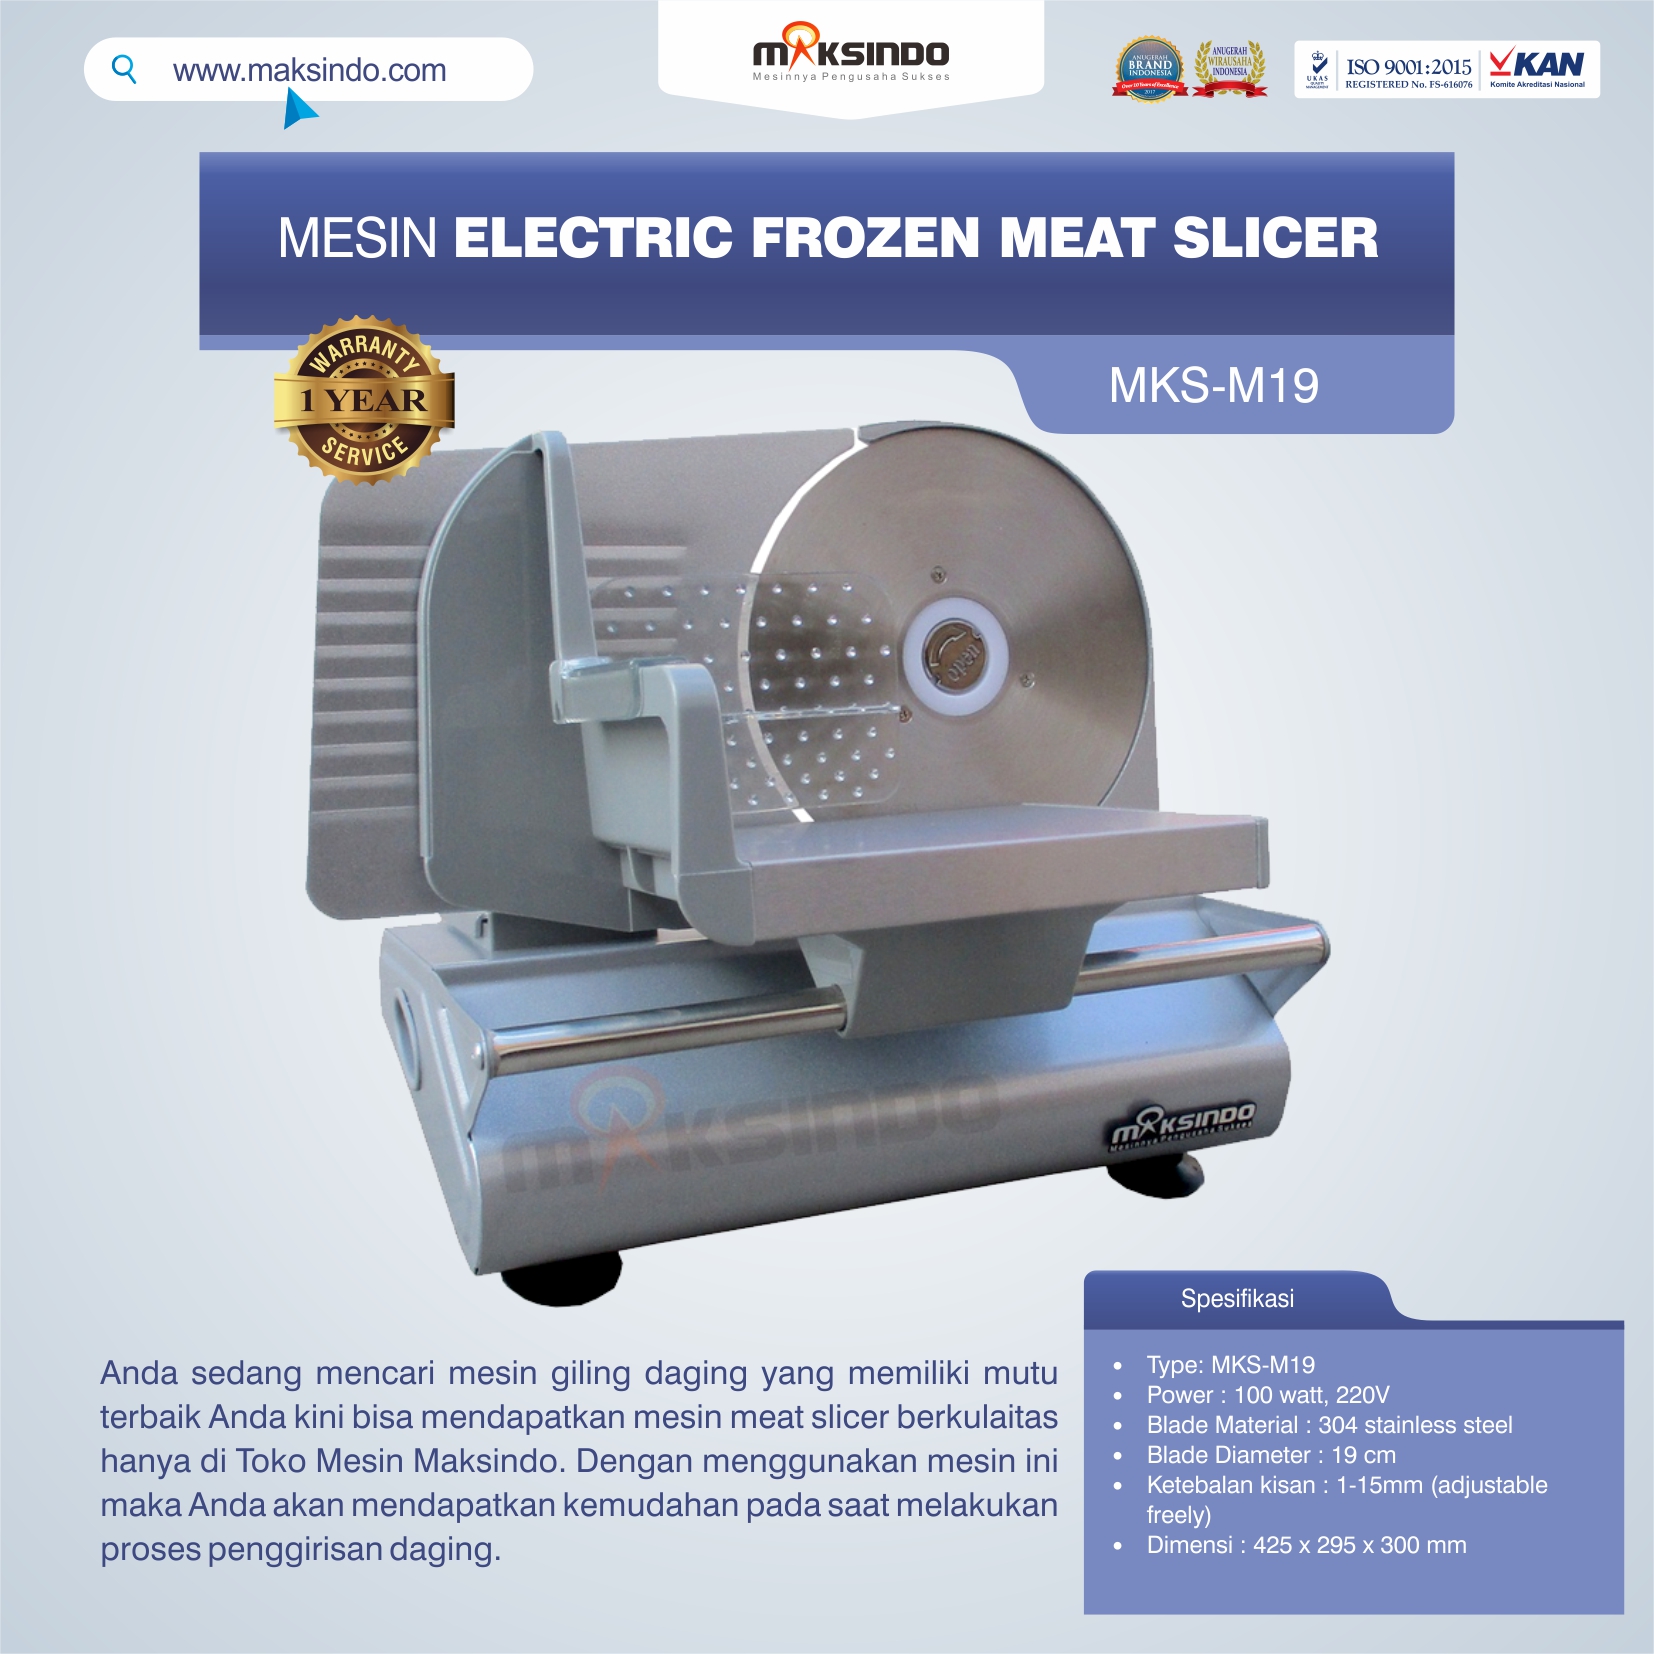 Jual Mesin Electric Frozen Meat Slicer MKS-M19 di Palembang